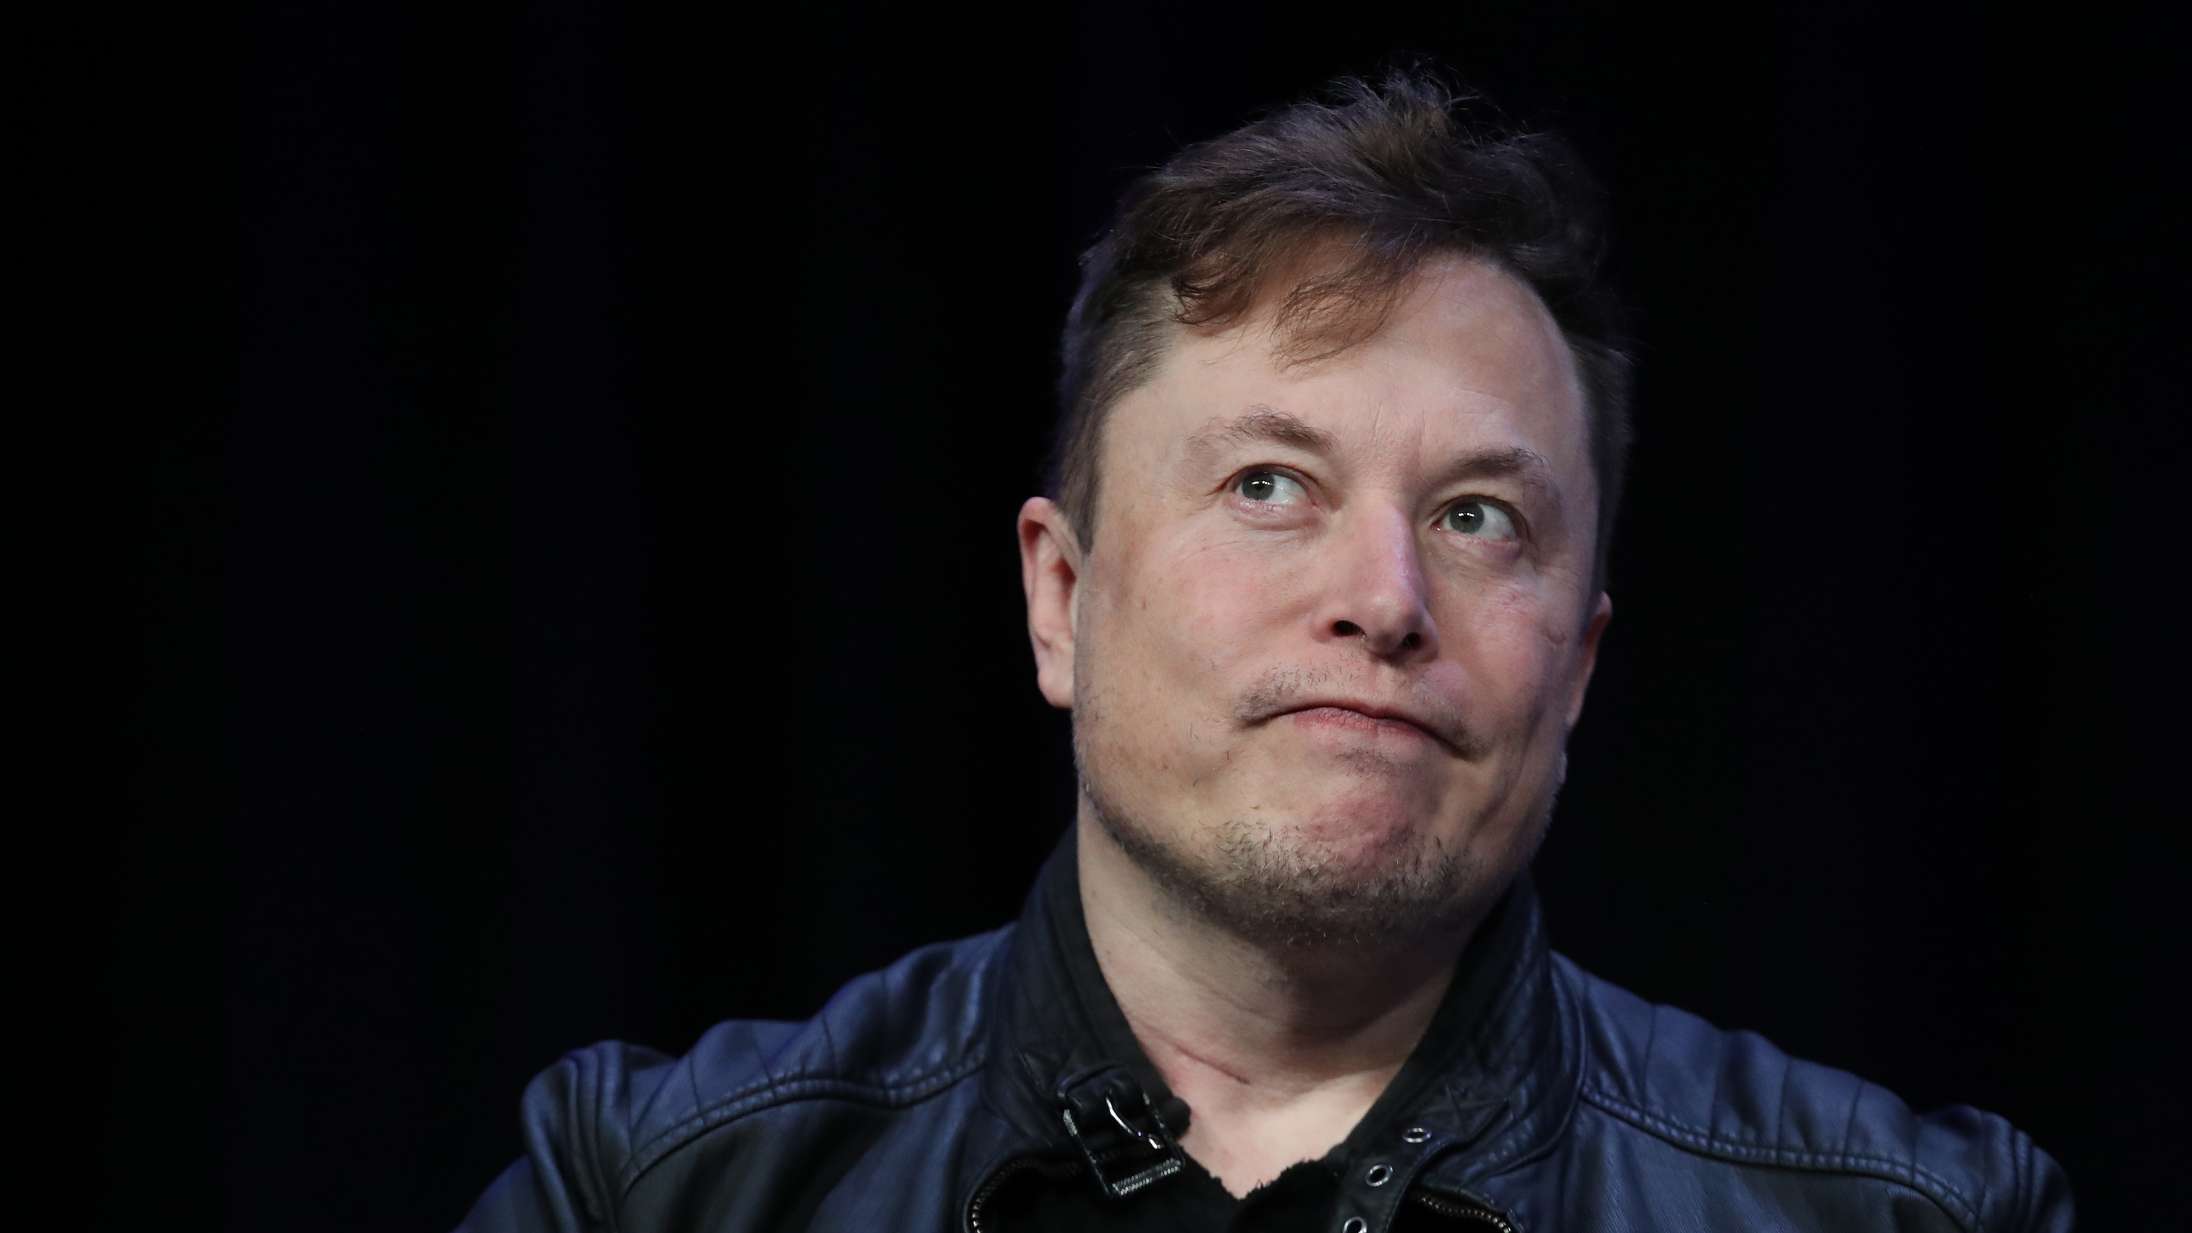 Elon Musk anklaget for seksuelt krænkende adfærd – SpaceX indgik forlig for 1,7 millioner kroner